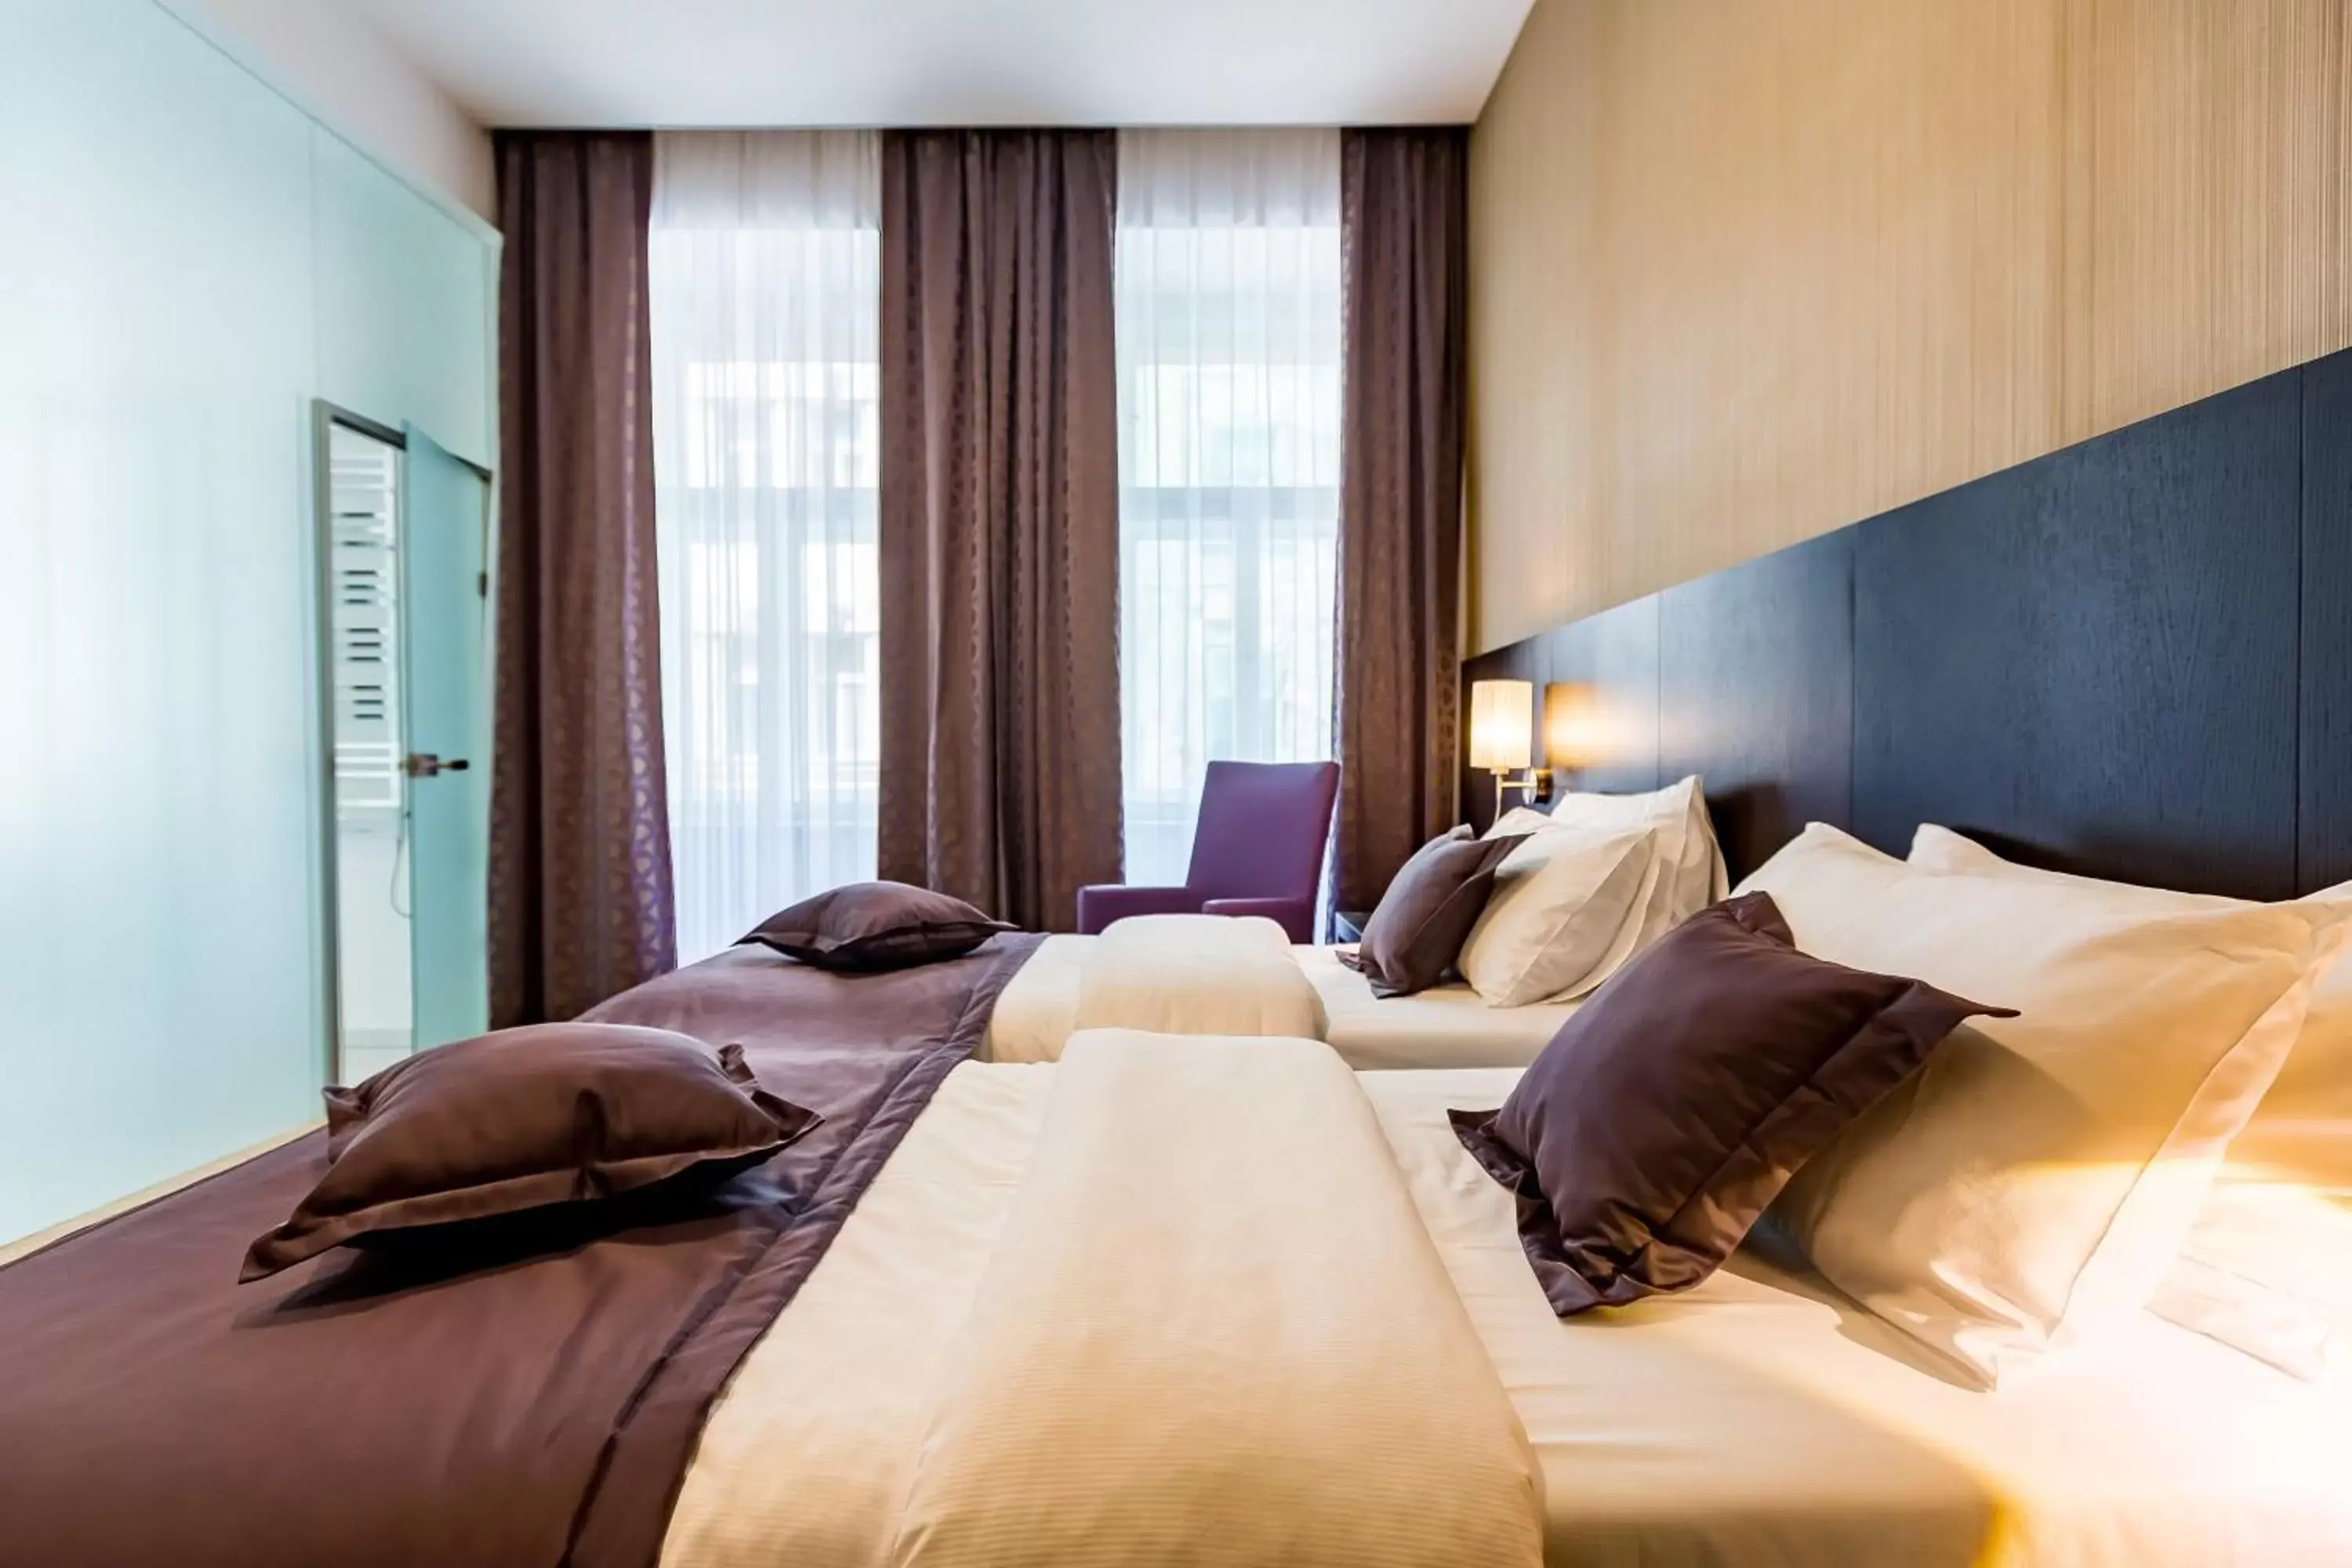 Bed in Myo Hotel Wenceslas